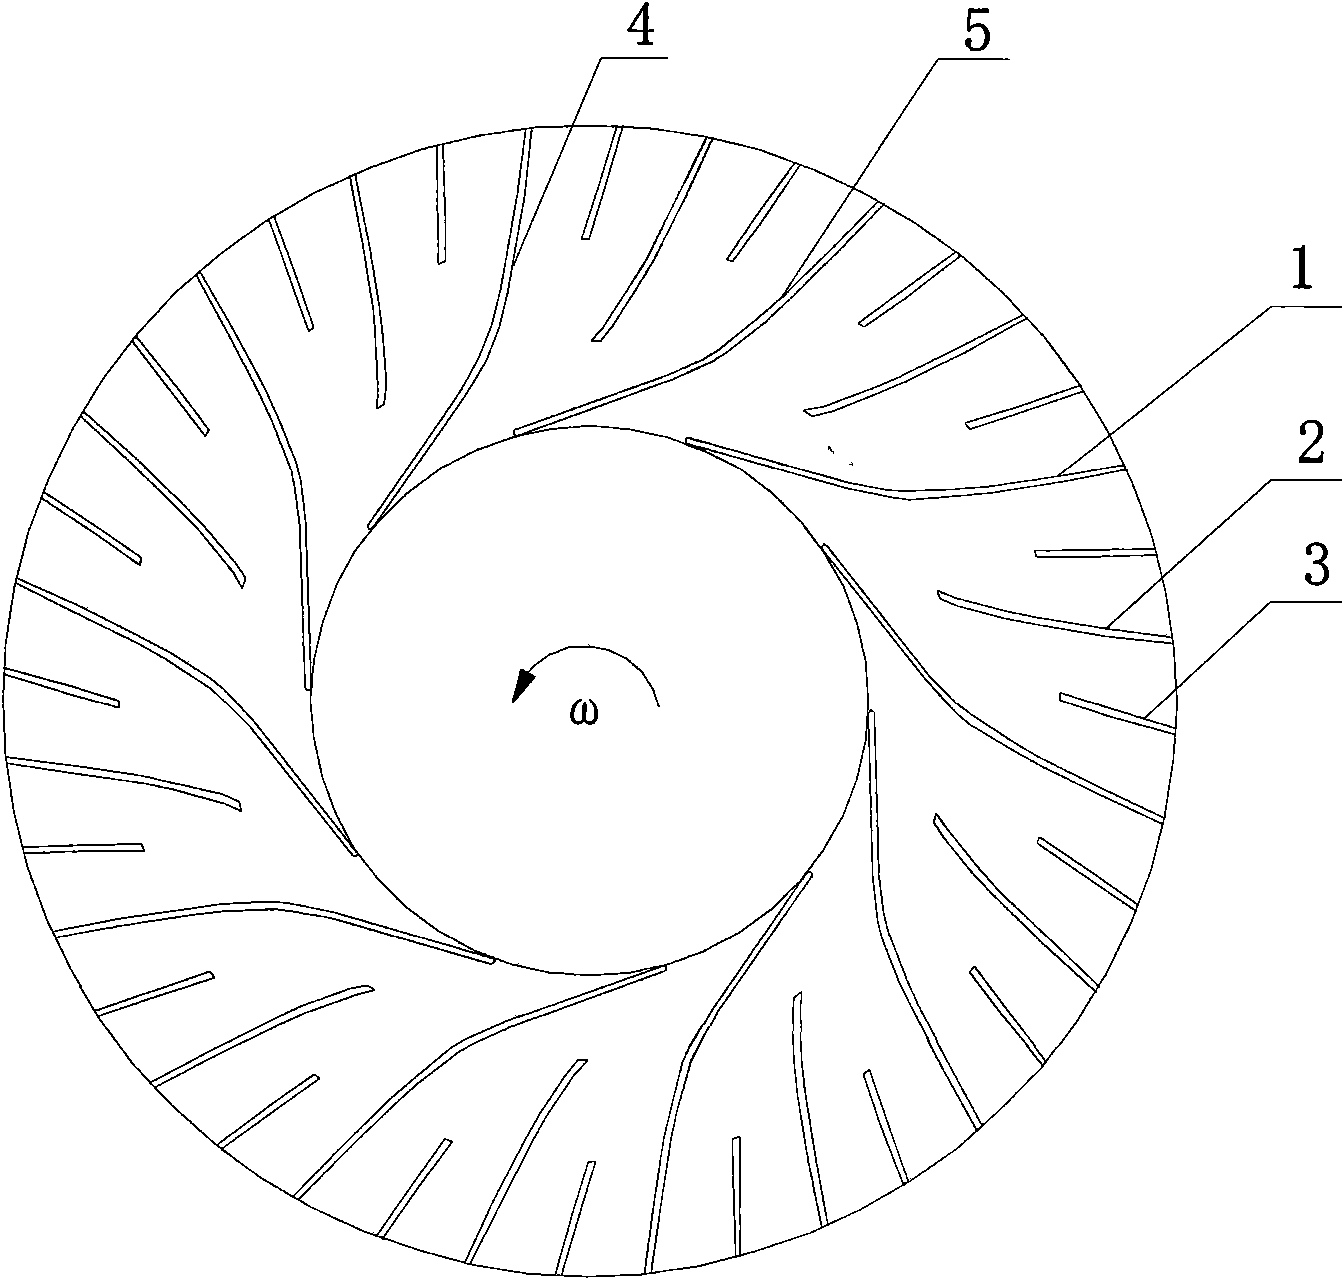 Secondary splitter blade type centrifugal impeller